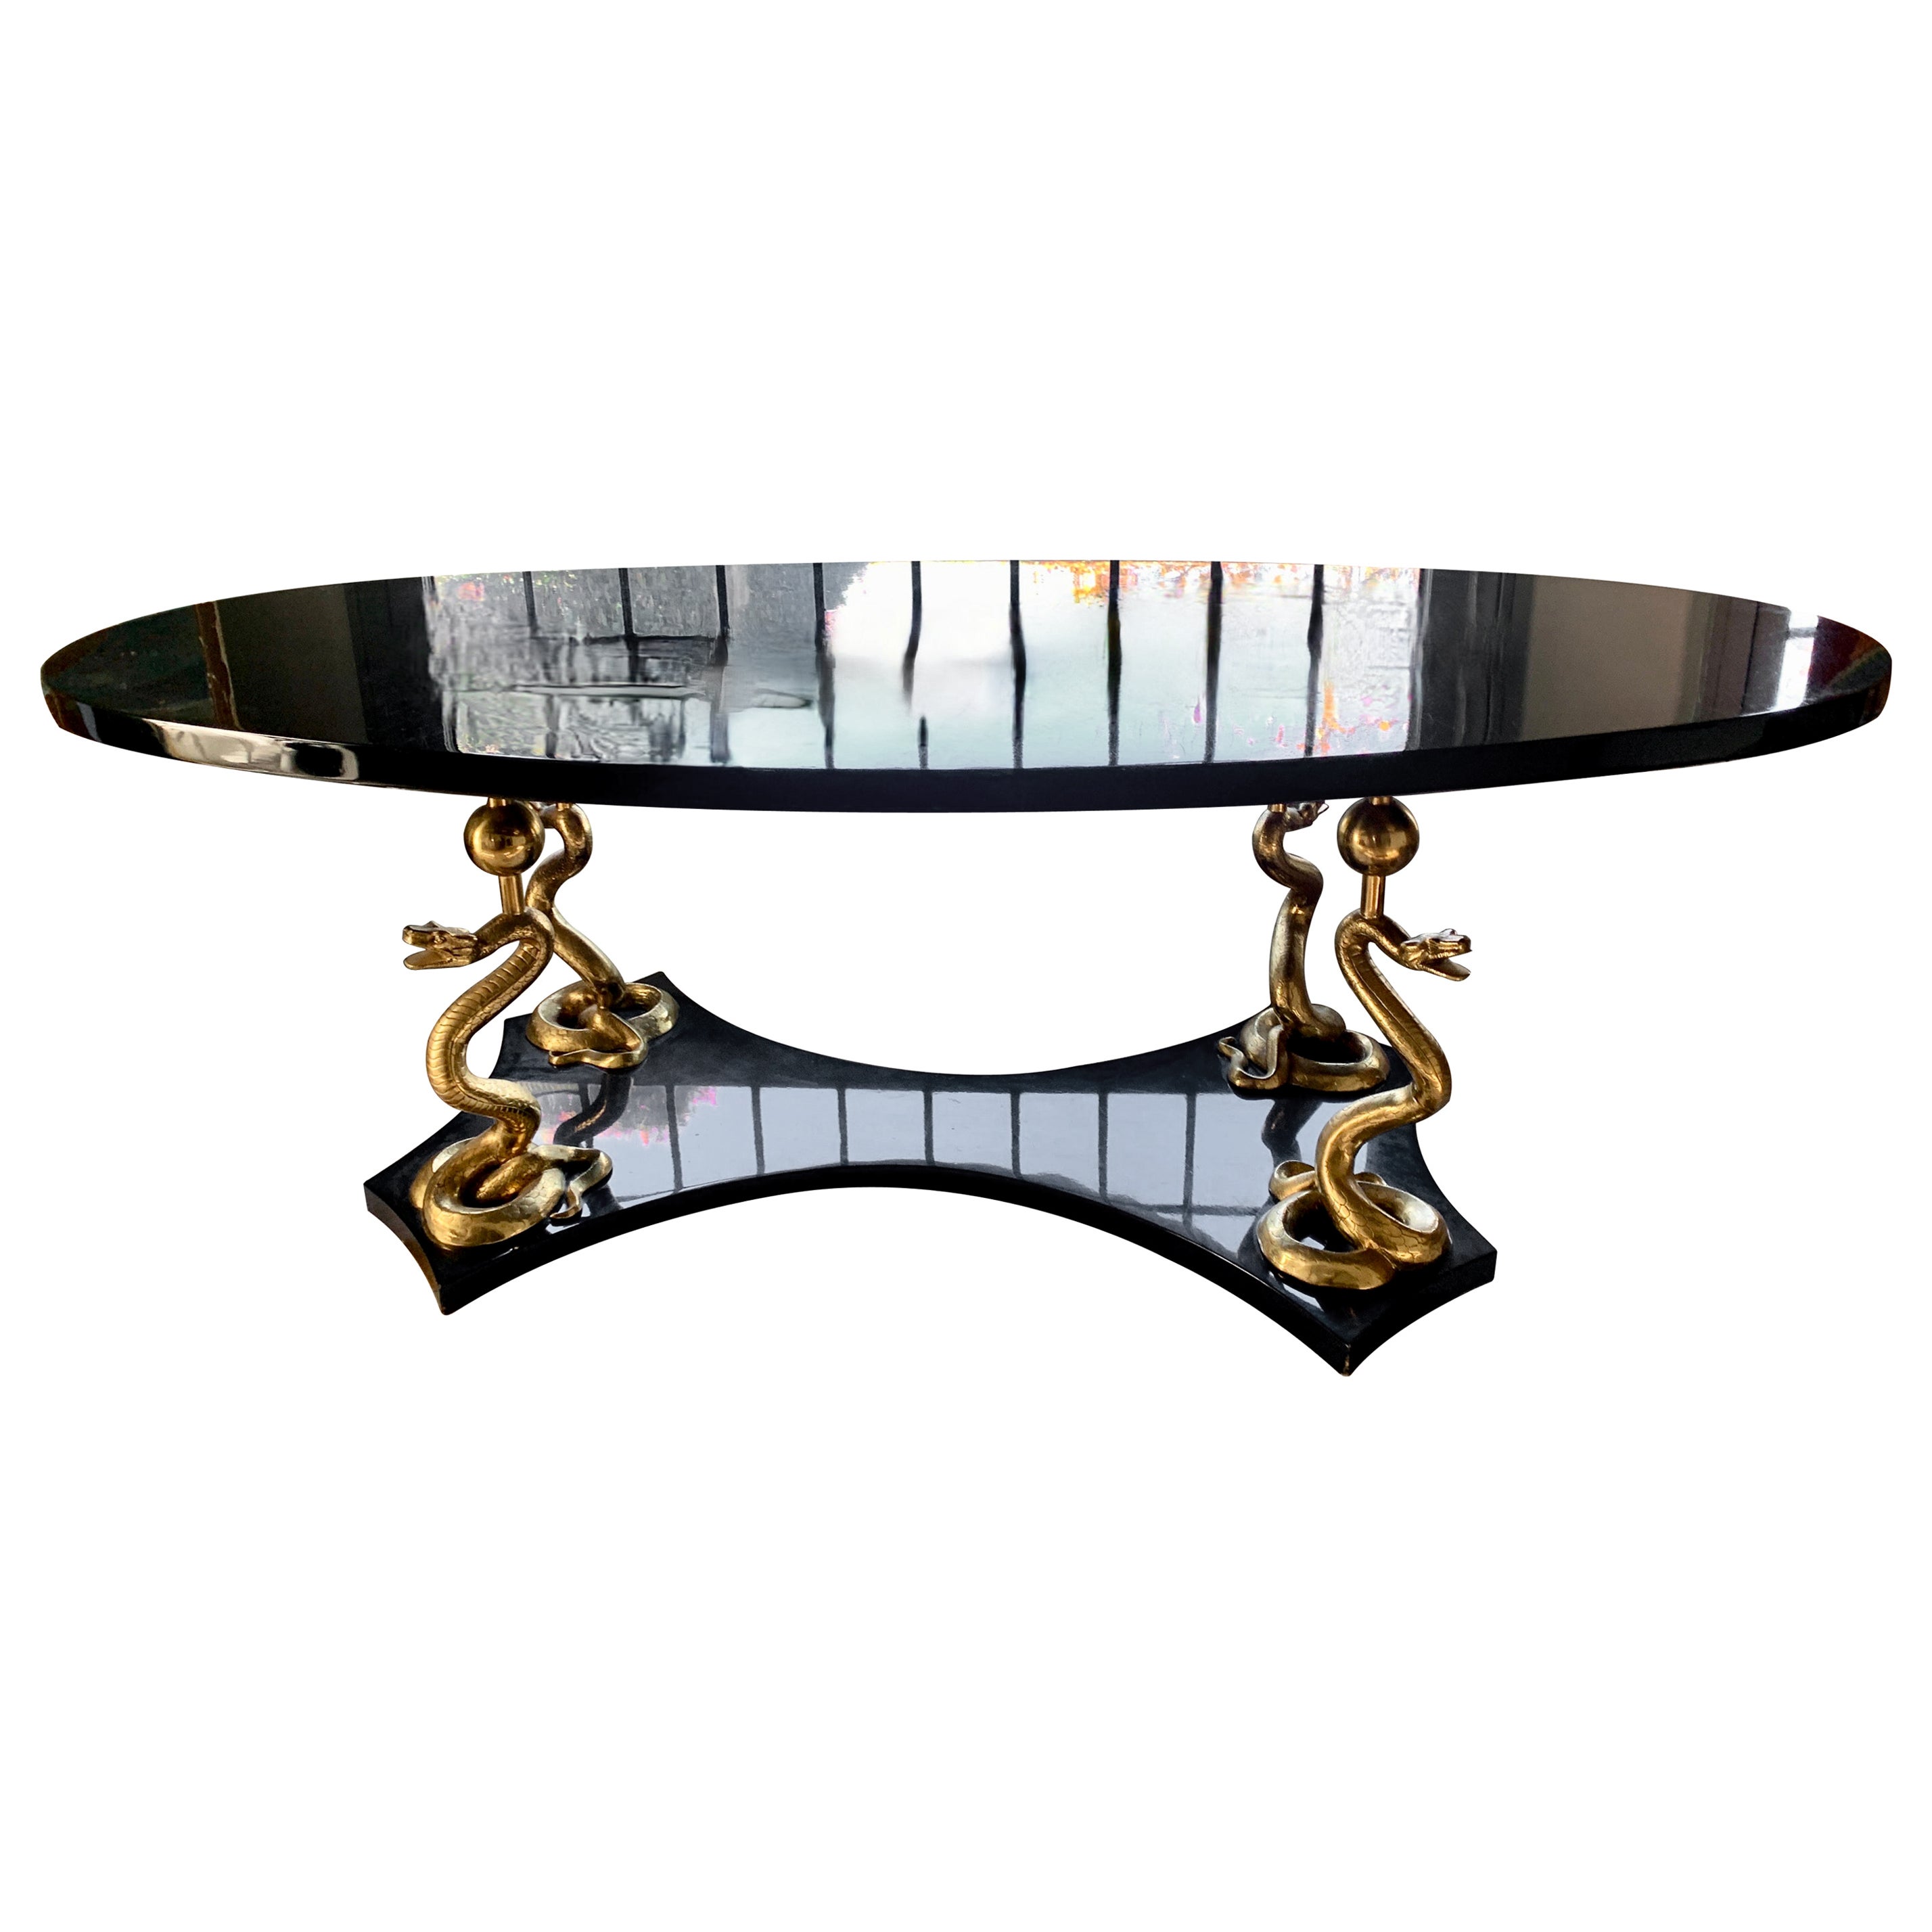 Ovaler Konsolen- oder Mitteltisch aus schwarzem Lack mit 24k vergoldeten Beinen nach Salvador Dali